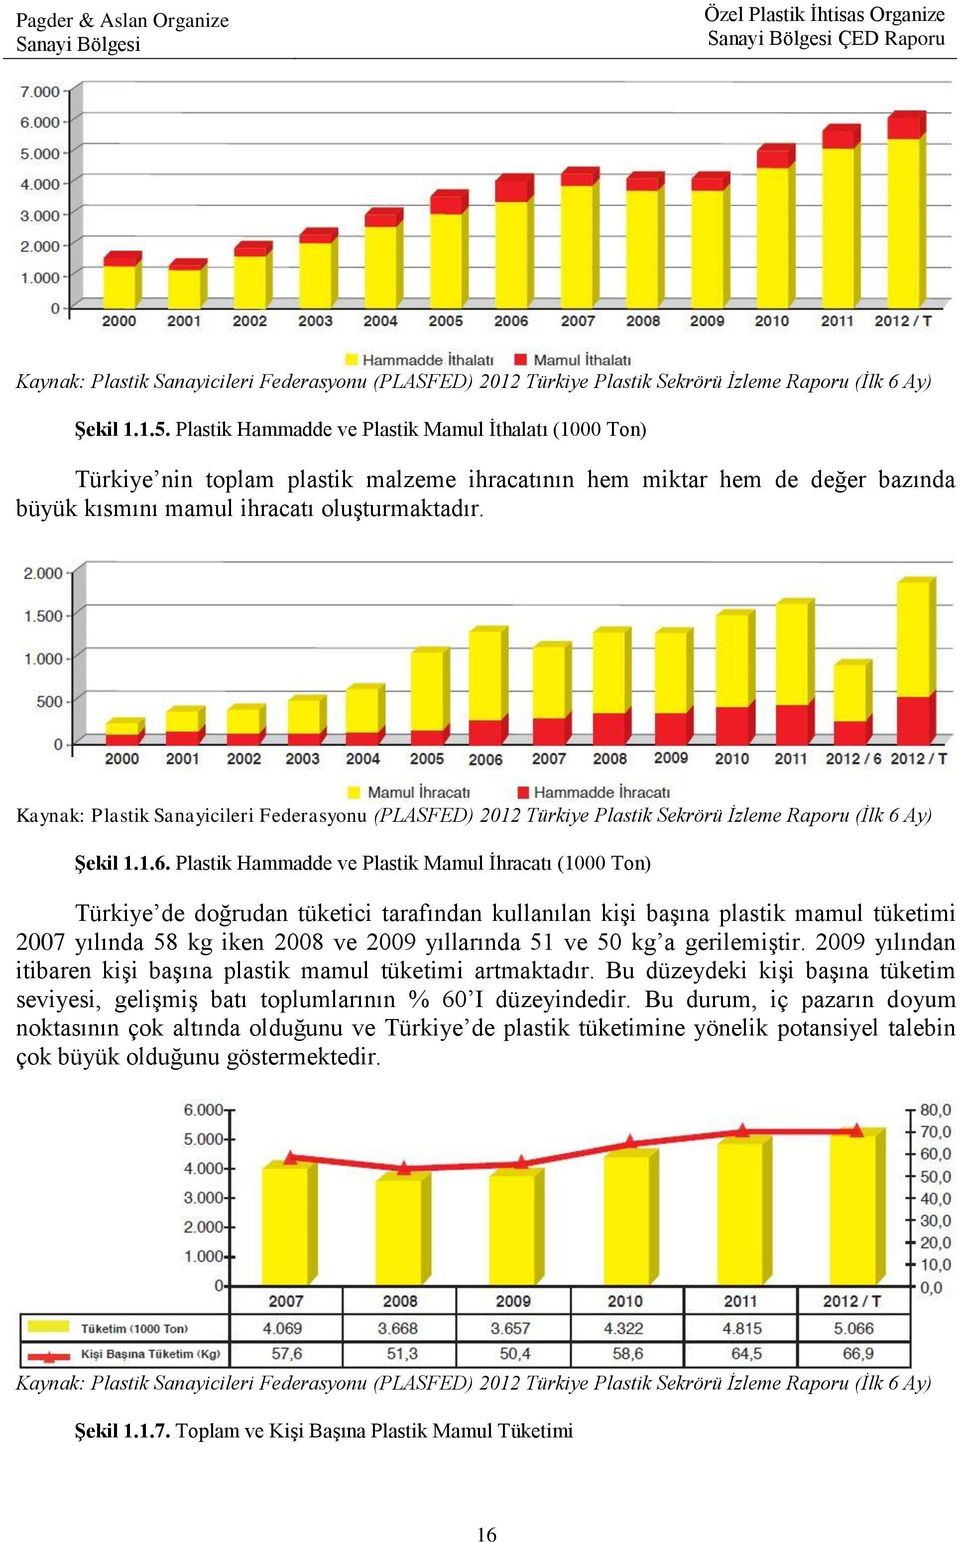 Kaynak: Plastik Sanayicileri Federasyonu (PLASFED) 2012 Türkiye Plastik Sekrörü İzleme Raporu (İlk 6 